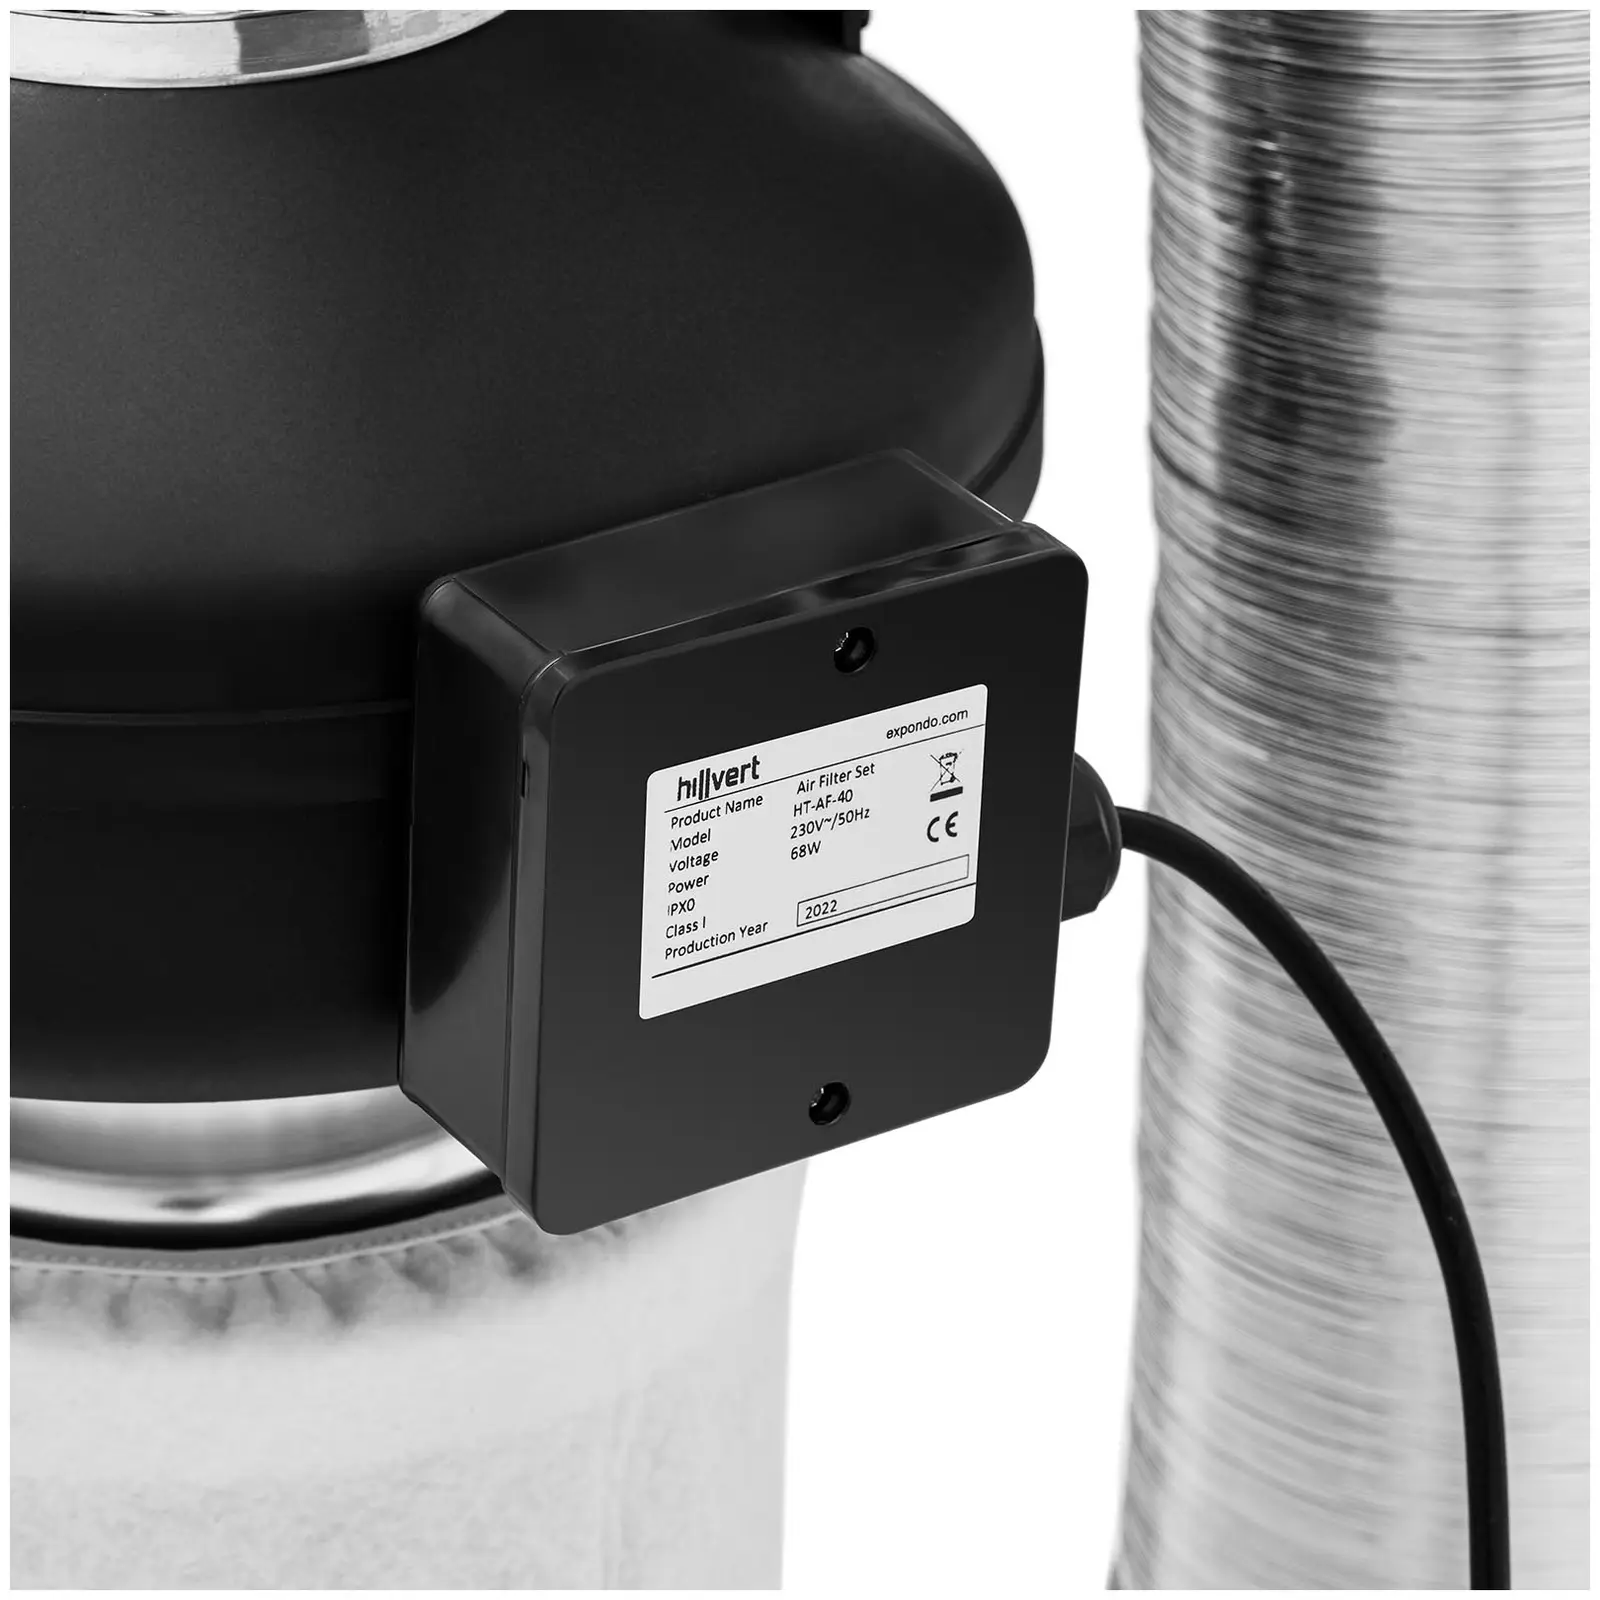 Kit de ventilação - filtro de carvão ativado 40 cm / ventilador / tubo de ventilação - 249,6 m³/h - saída Ø102 mm